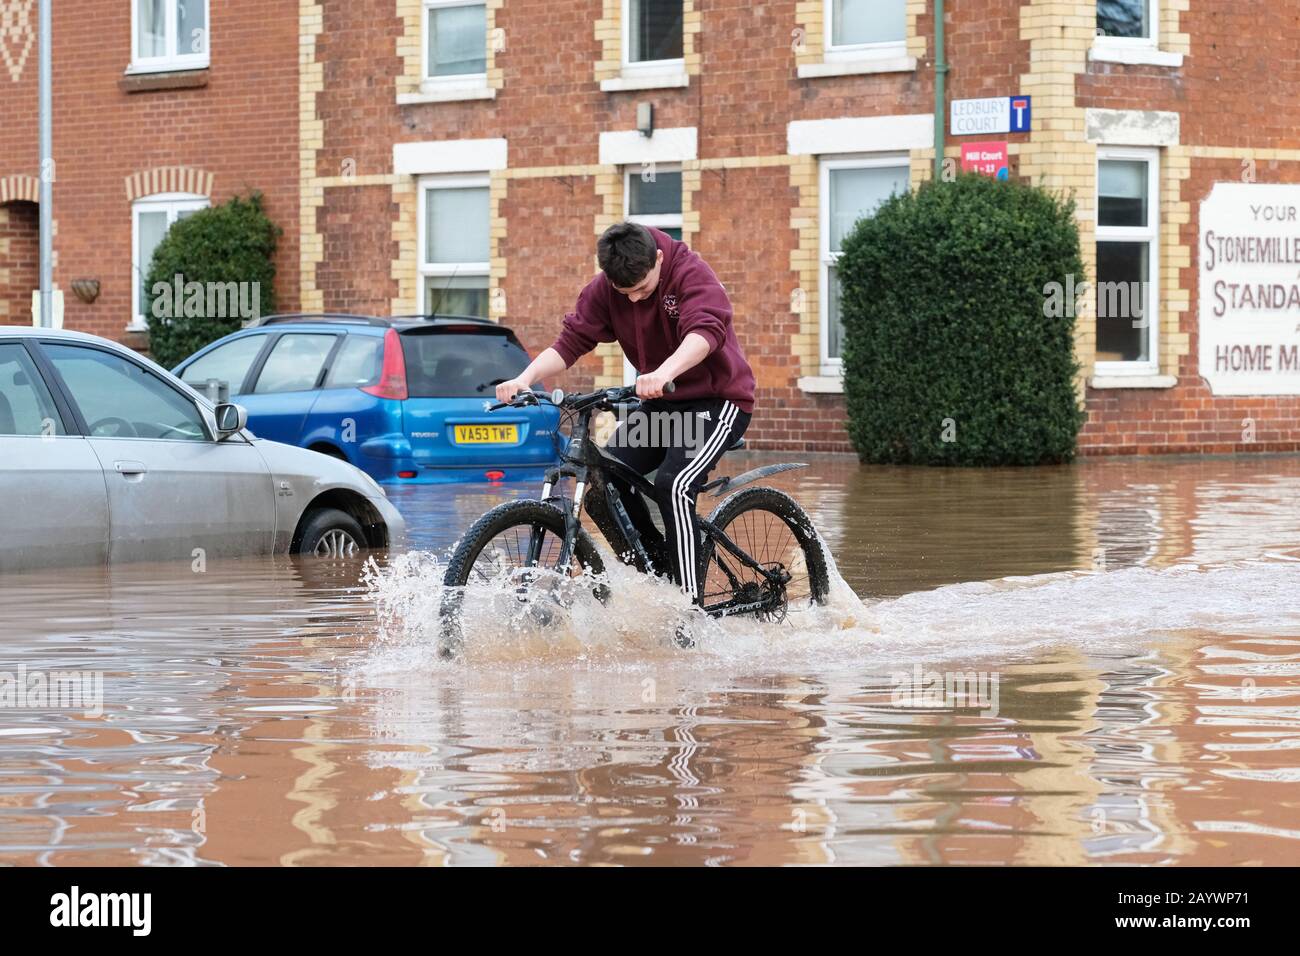 Hereford, Herefordshire, Royaume-Uni - Lundi 17 février 2020 - un jeune adolescent s'amuse à faire du vélo dans la zone inondée de Ledbury Road de la ville. Photo Steven May / Alay Live News Banque D'Images